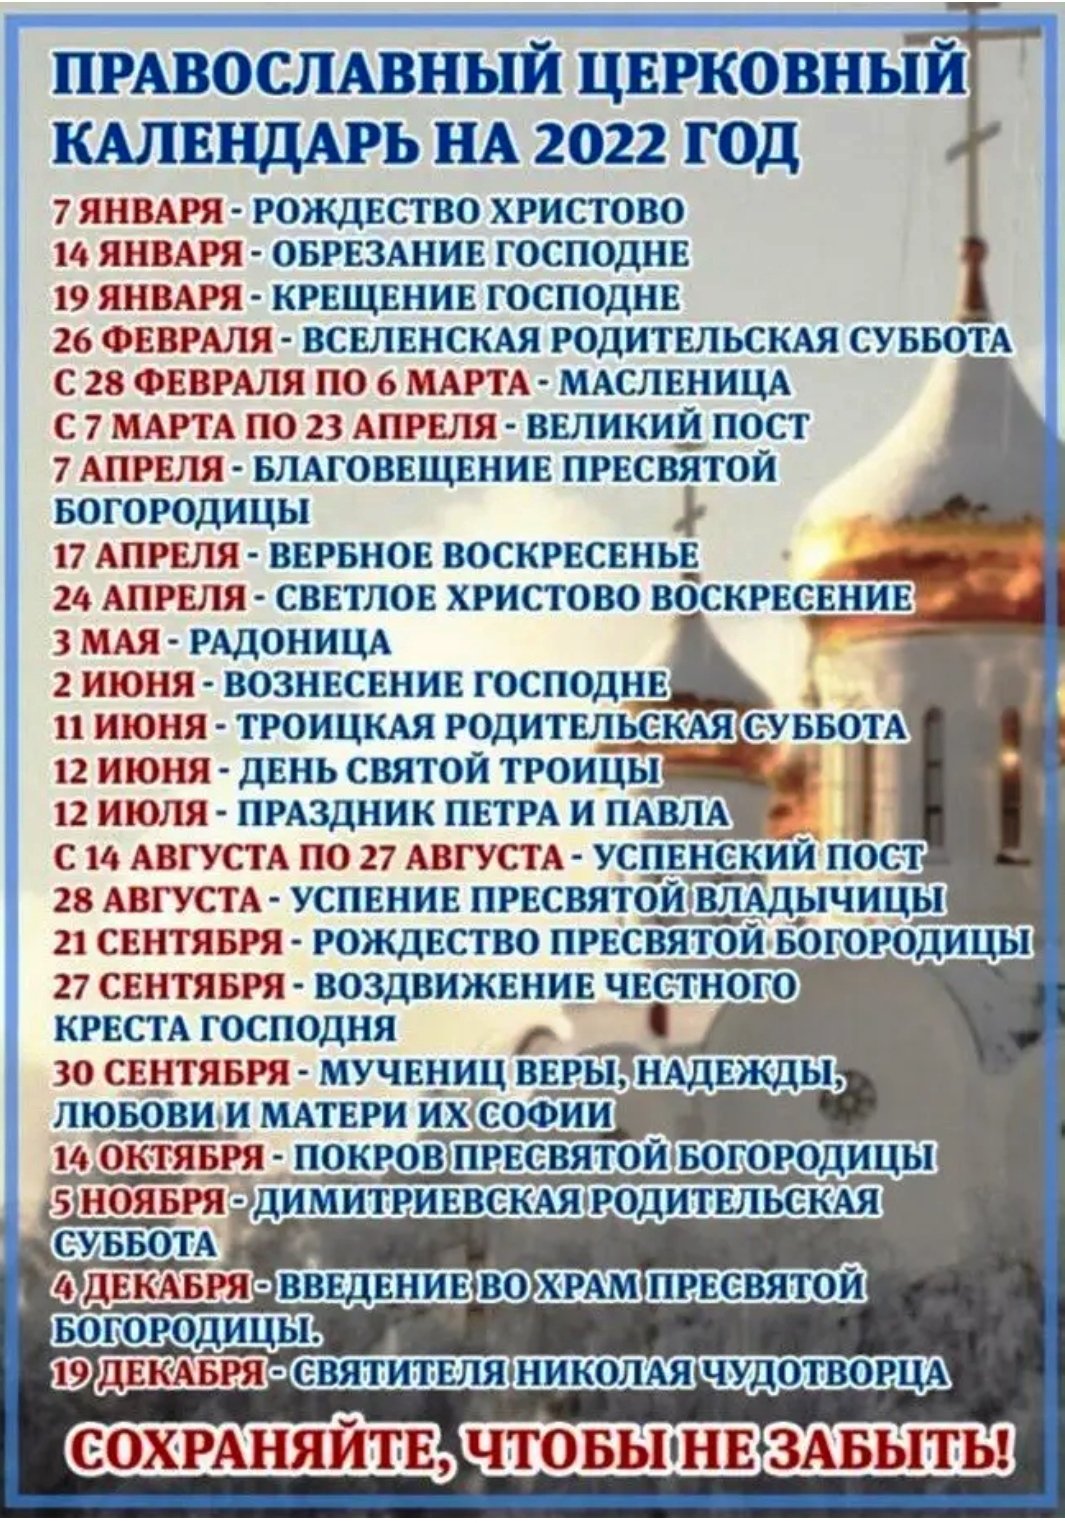 26 апреля православный